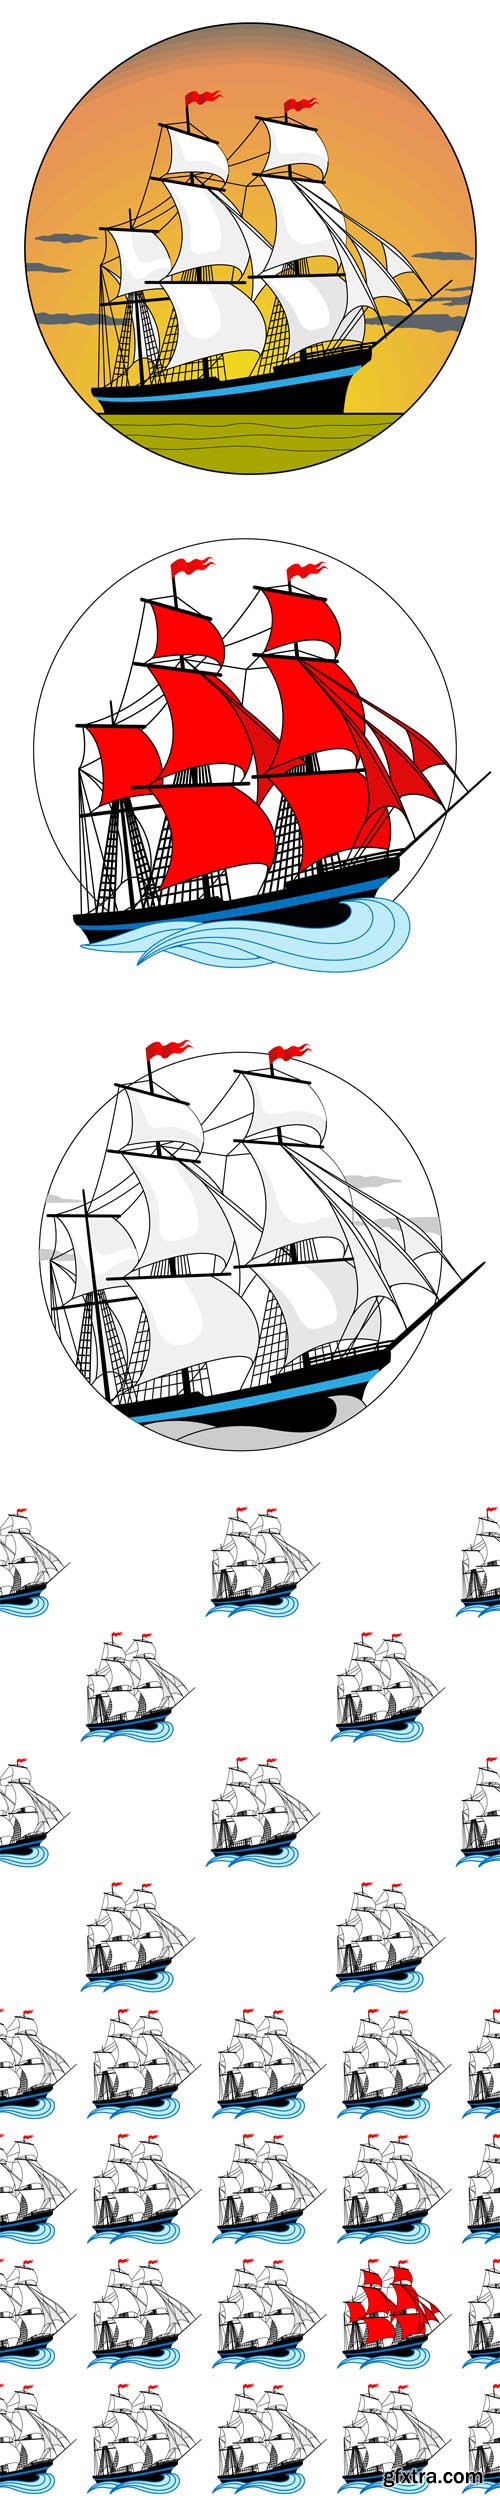 Sailing ship - Vectors A000008